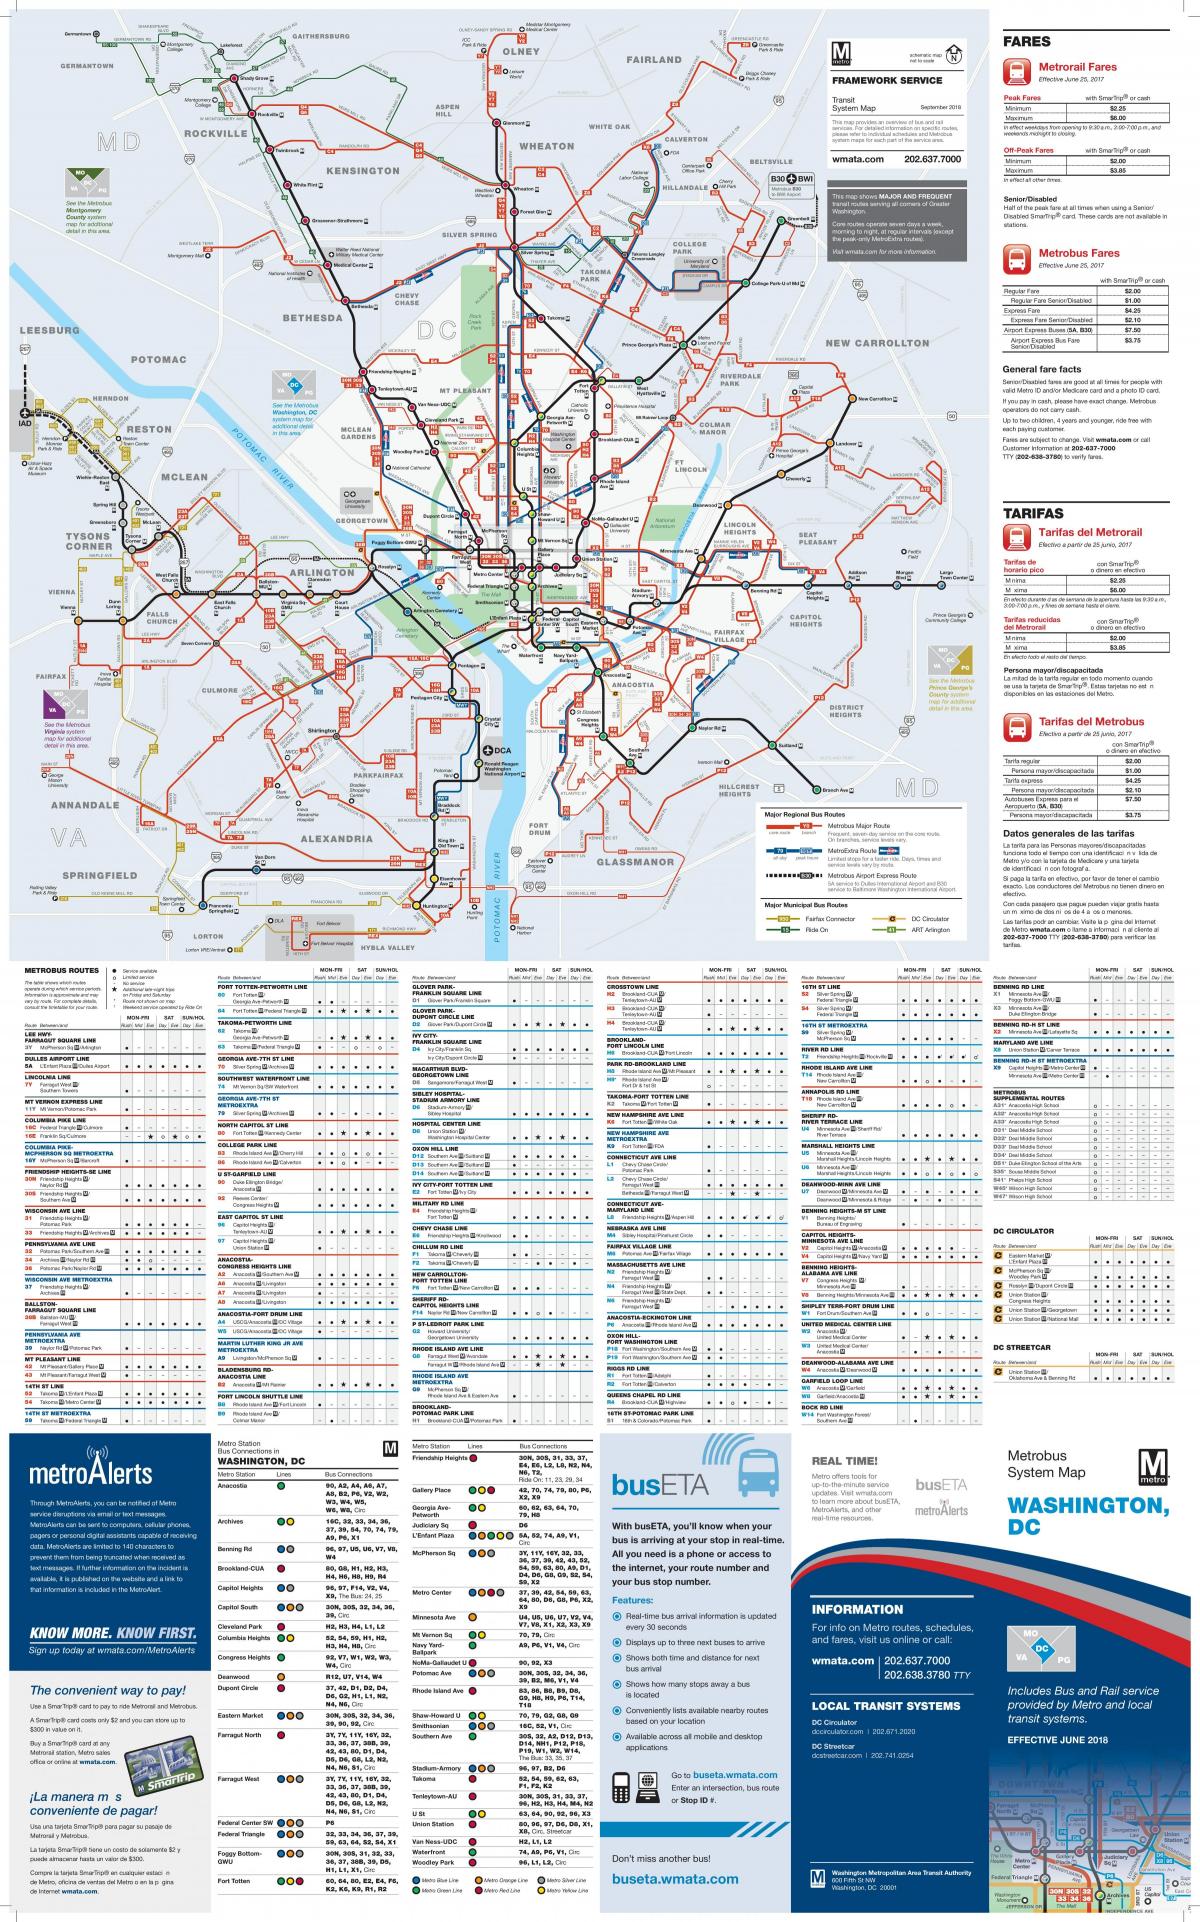 Mappa della stazione degli autobus di Washington DC